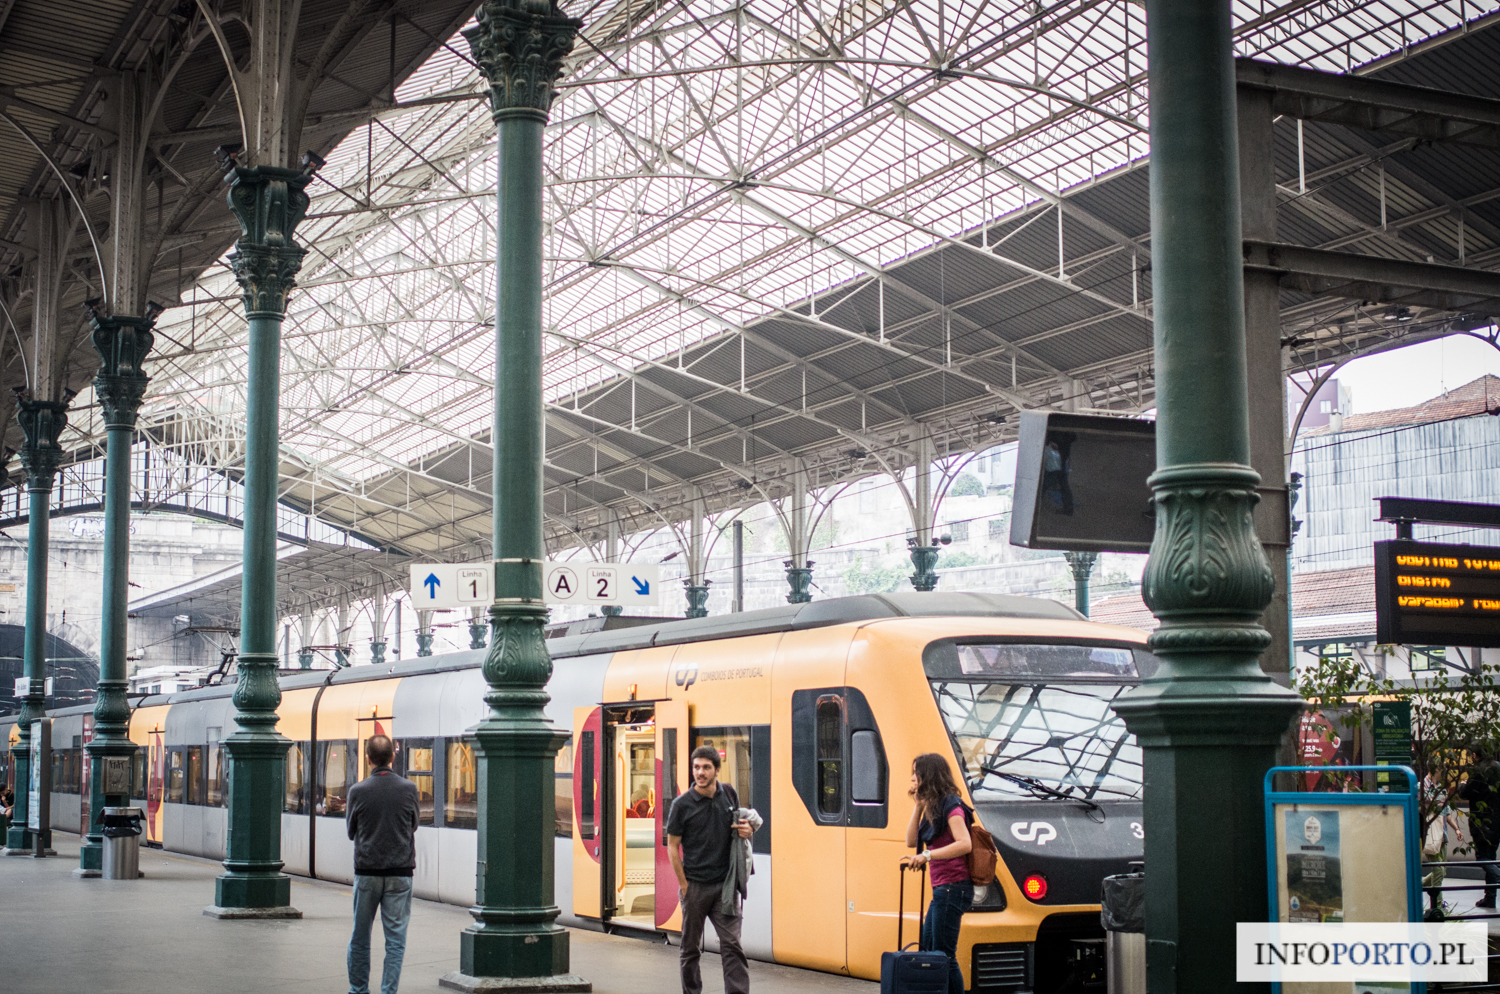 Sao Bento Porto stacja kolejowa dworzec kolejowy São Bento św Benedykta zabytki i atrakcje turystyczne w Porto Oporto zdjęcia fotografie photo pociągi